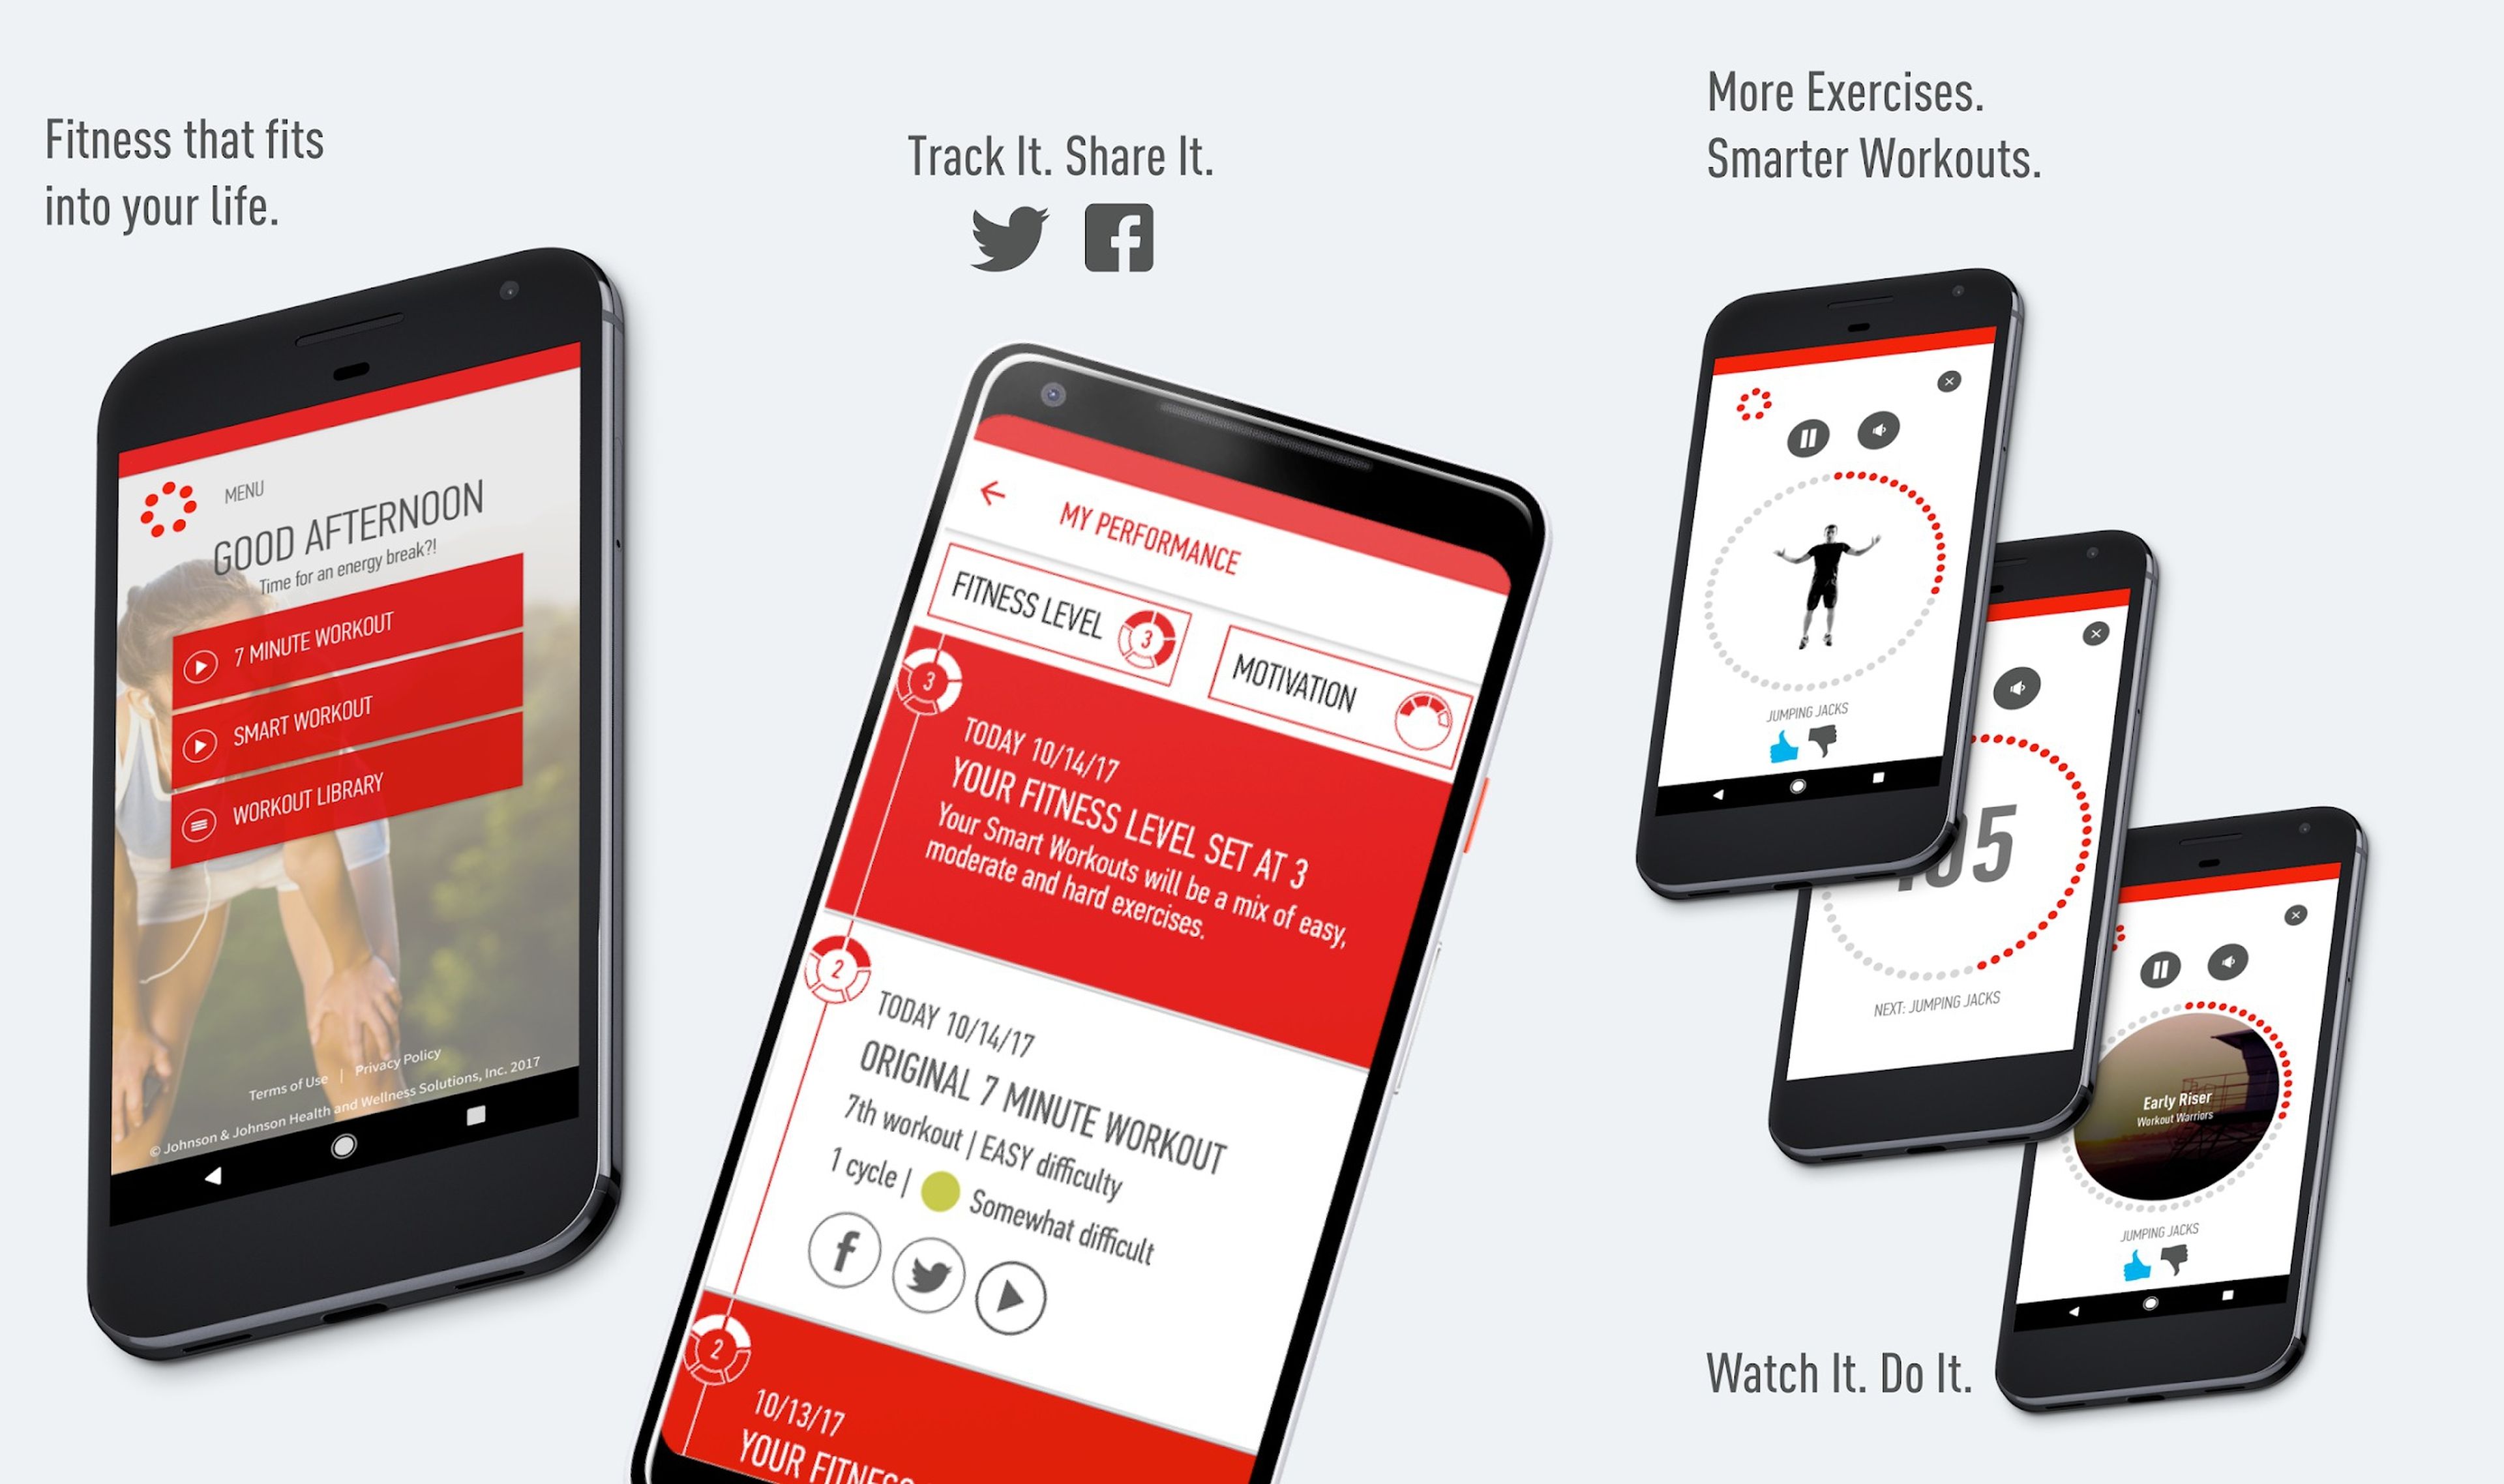 Ponte en forma en solo 7 minutos con estas aplicaciones para móviles Android e iPhone